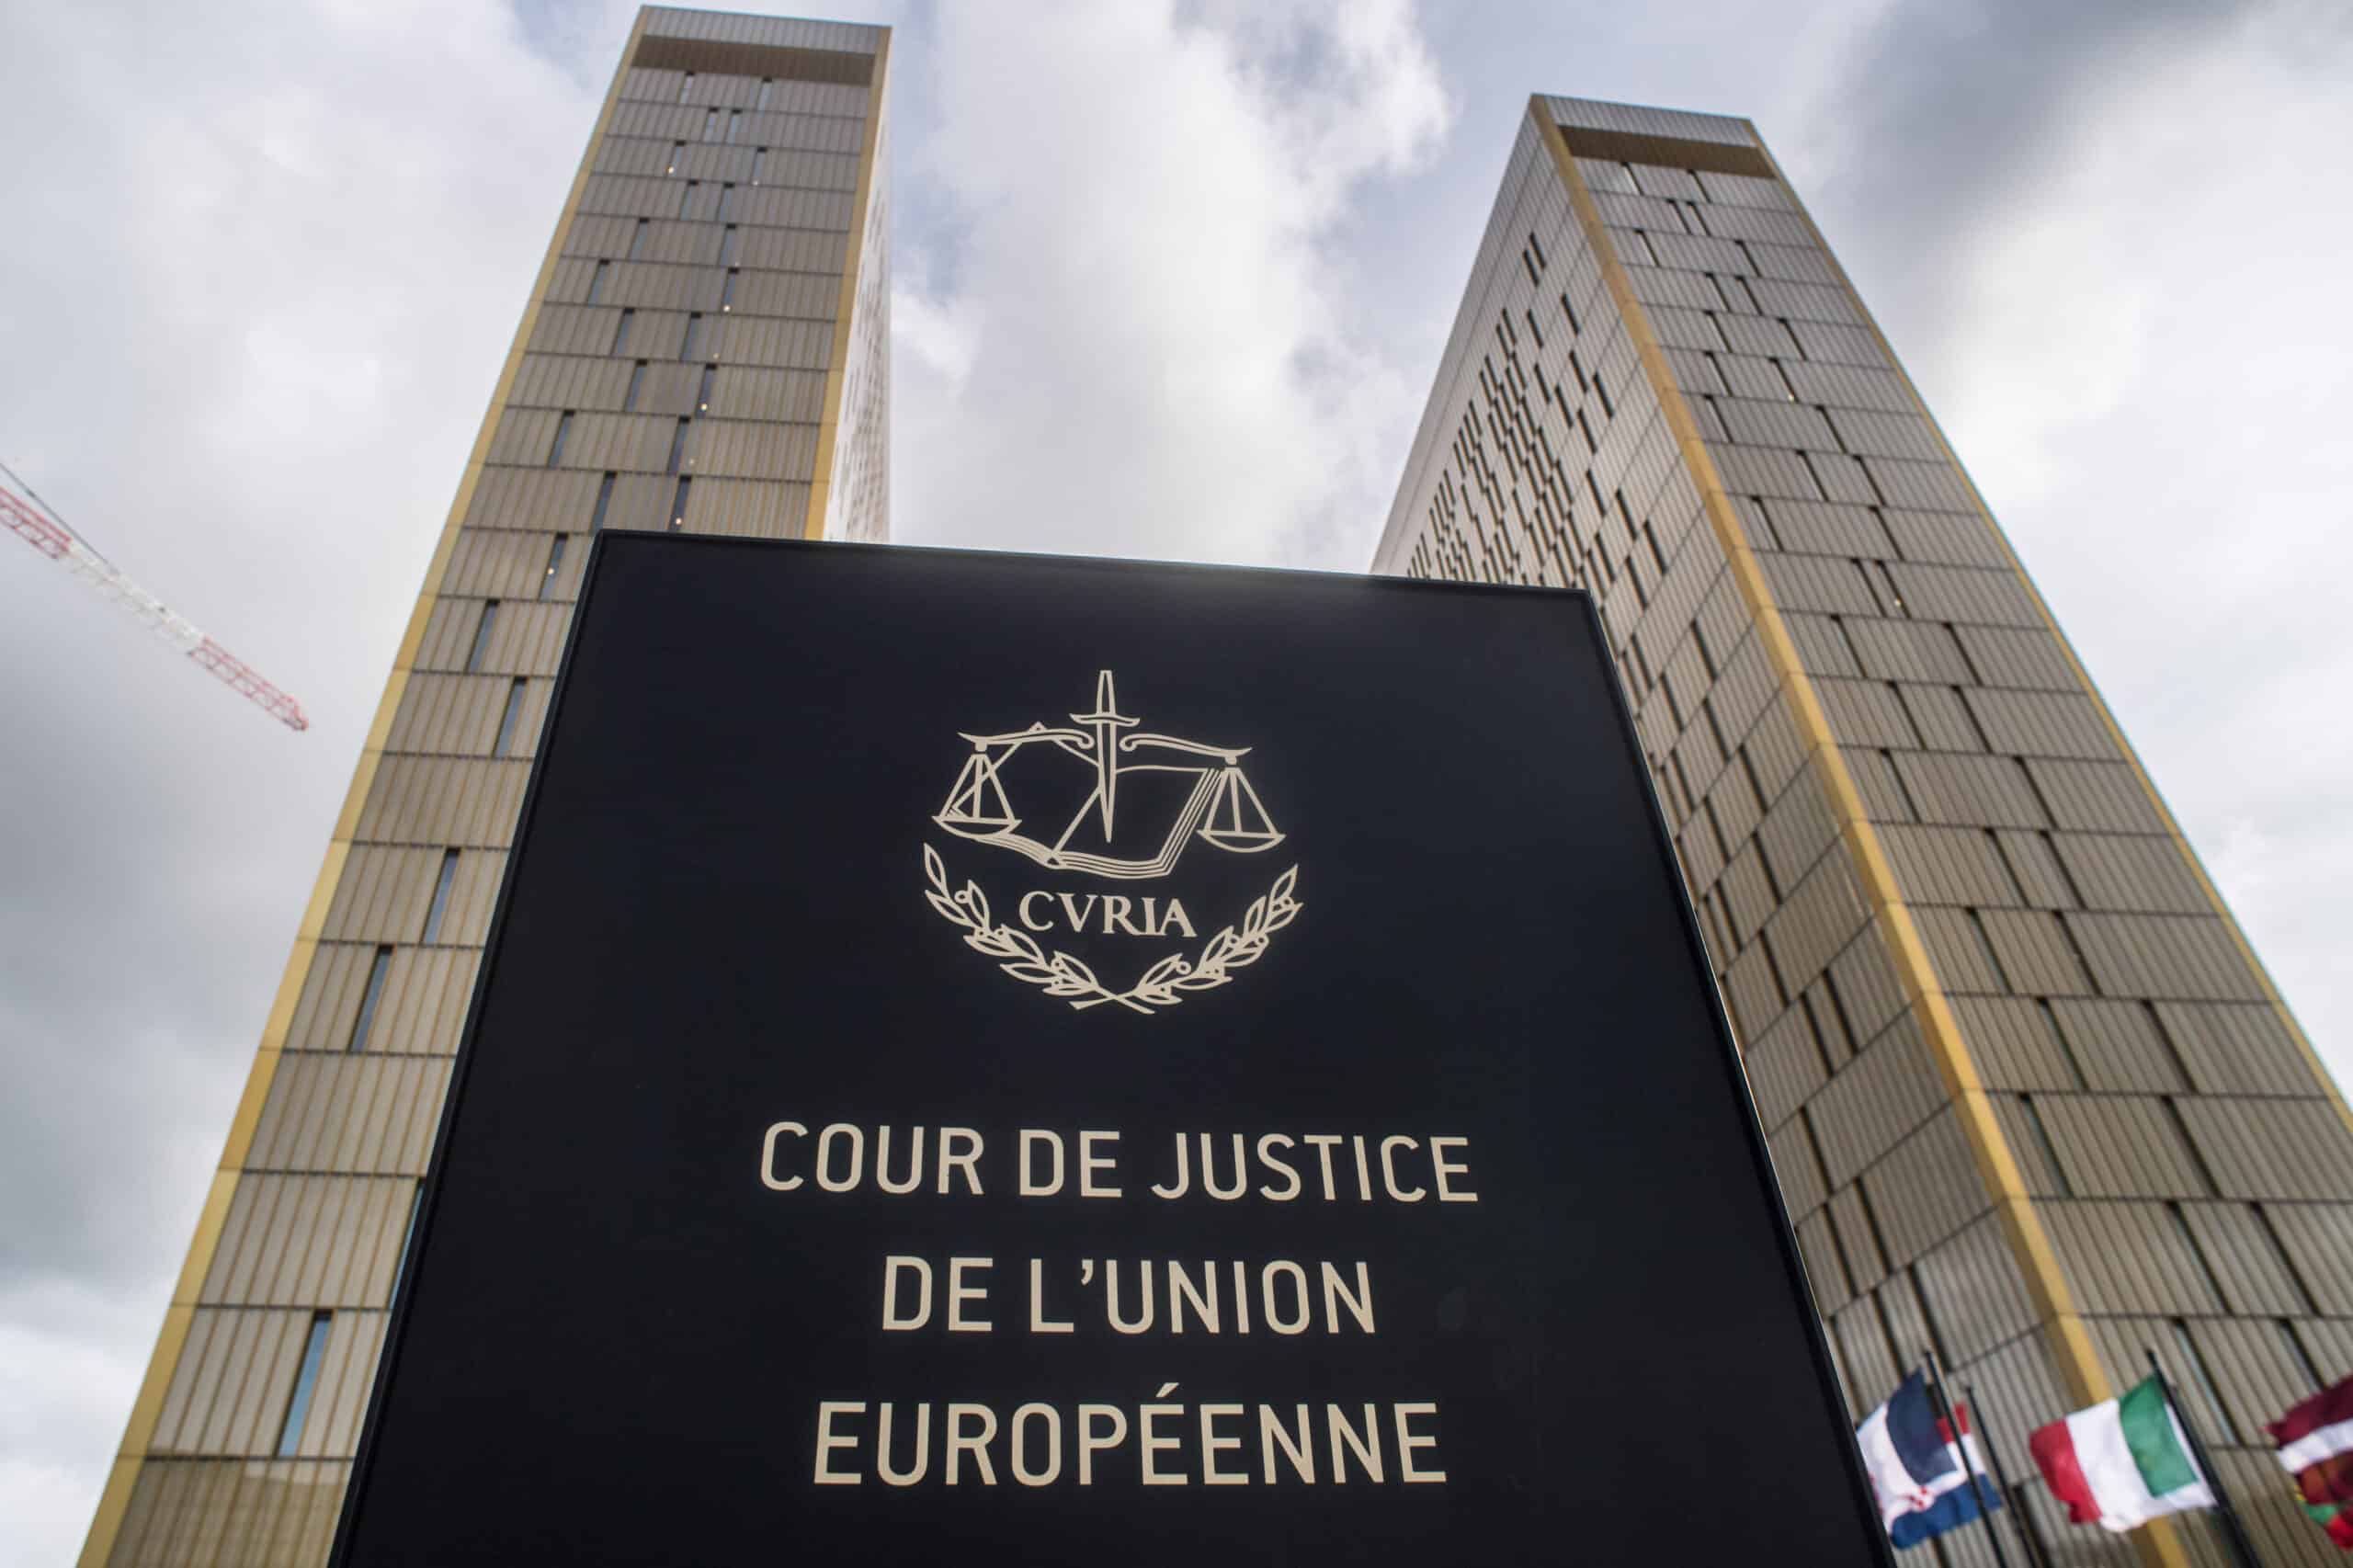 Přečtete si více ze článku Soud EU zamítl žaloby Polska a Maďarska proti spojení právního státu a peněz